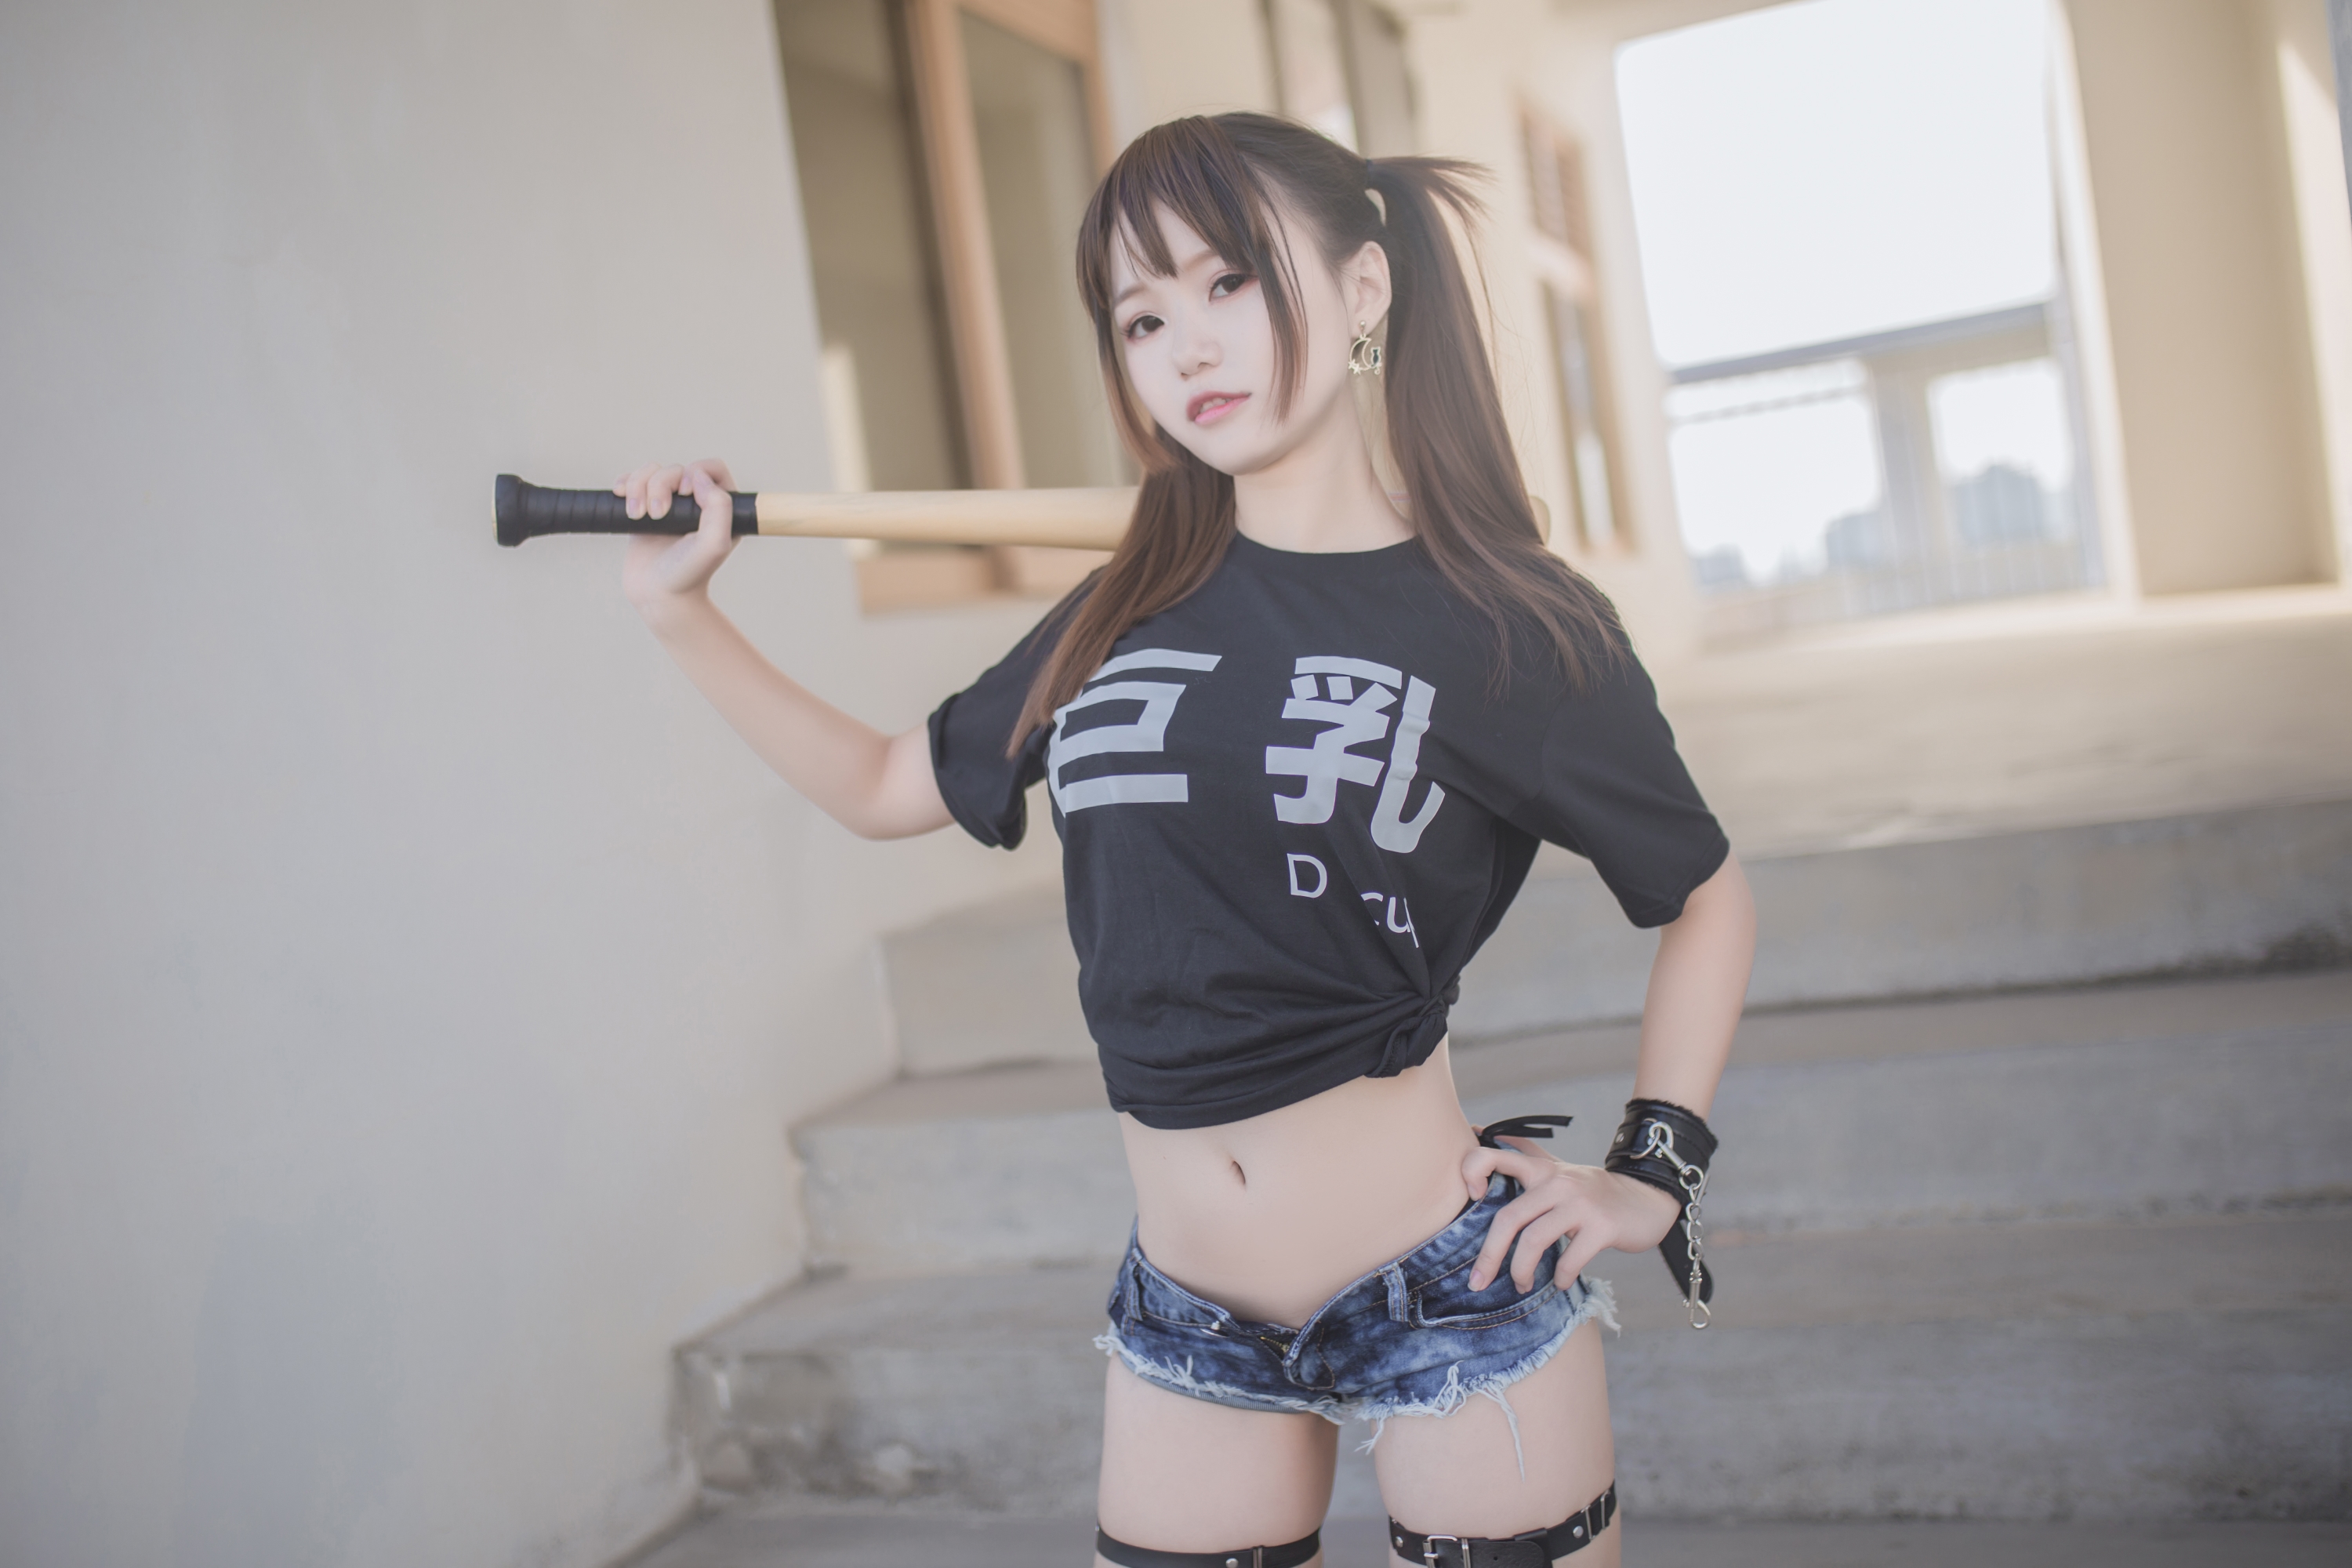 Women Model Asian Brunette Pigtails Looking At Viewer T Shirt Black T Shirt Baseball Bats Portrait S 3000x2000